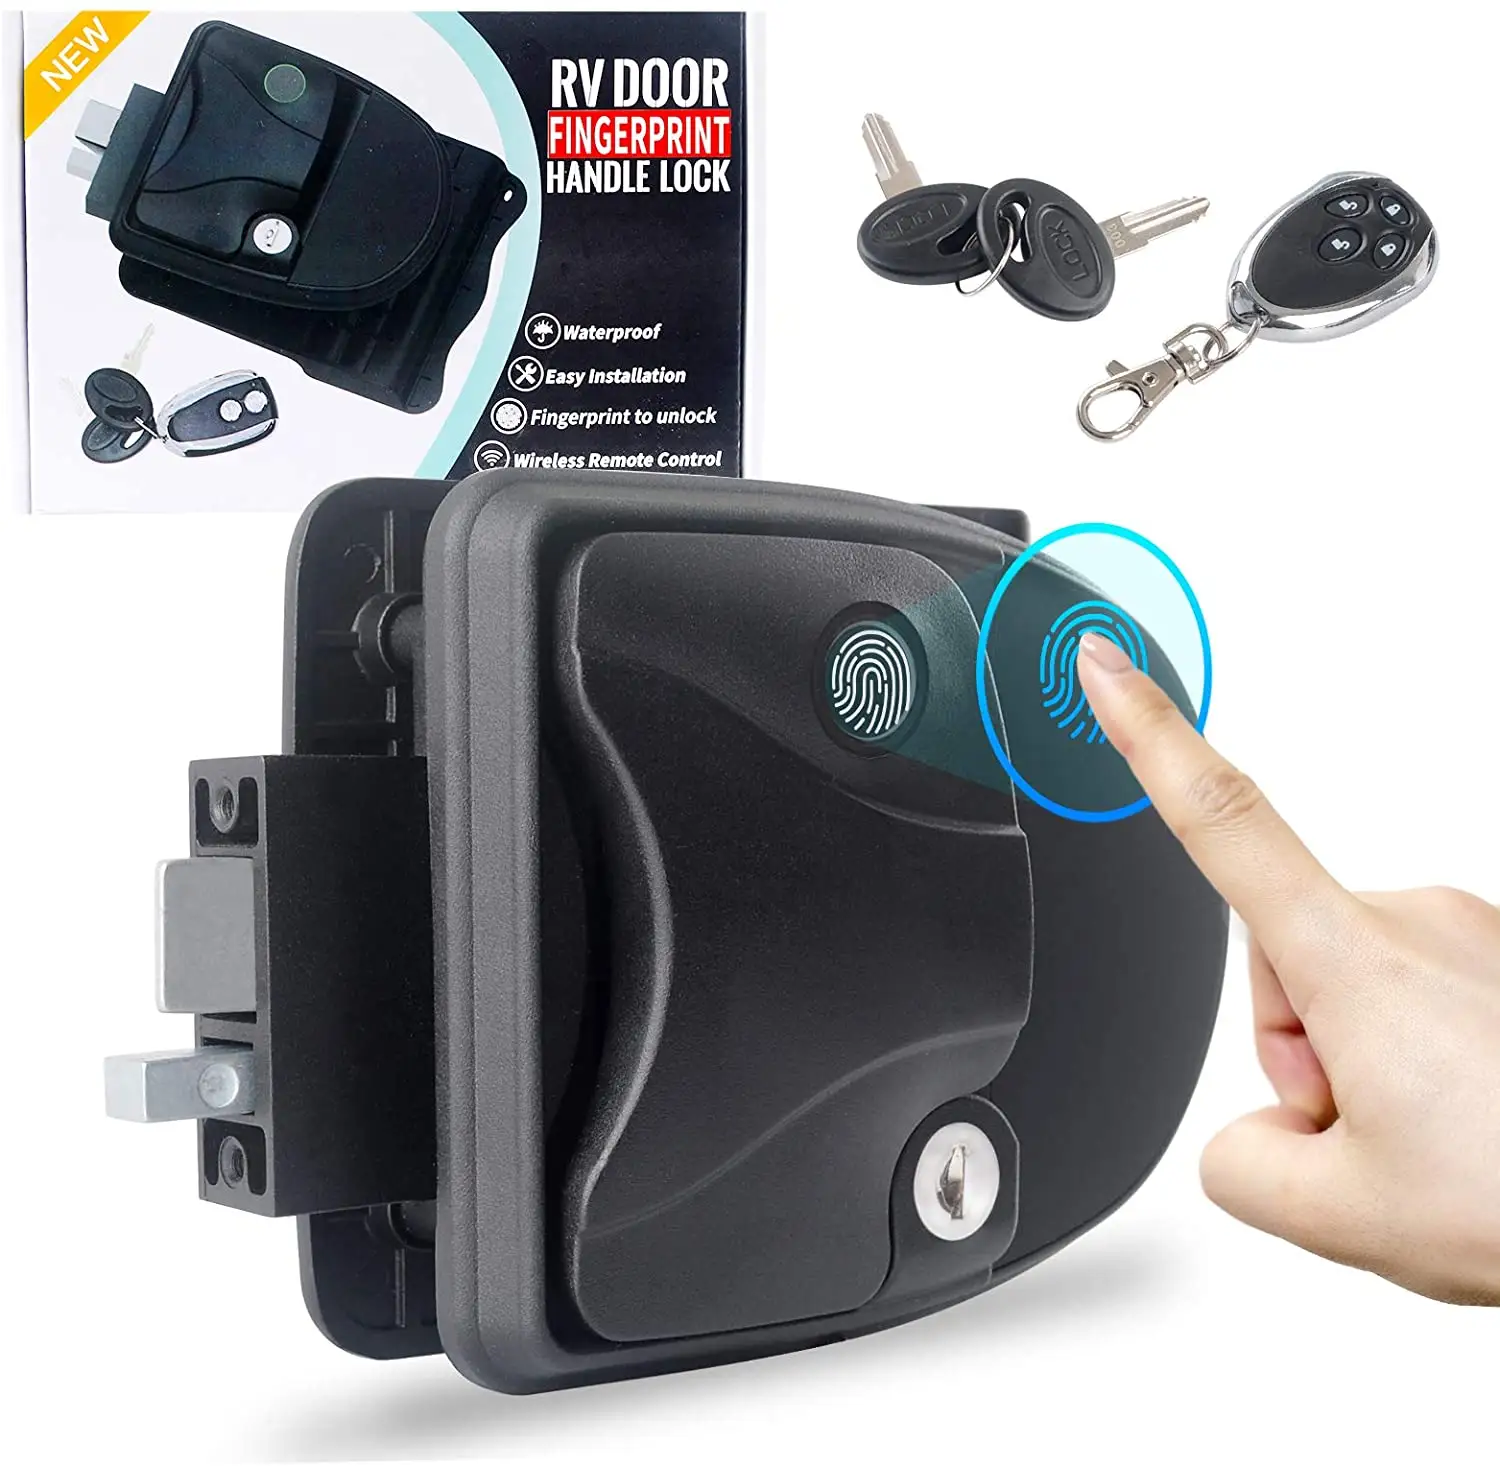 Blocco porta RV sblocco impronte digitali blocco Camper con chiavi per rimorchio da viaggio riconoscimento impronte digitali Camper e telecomando